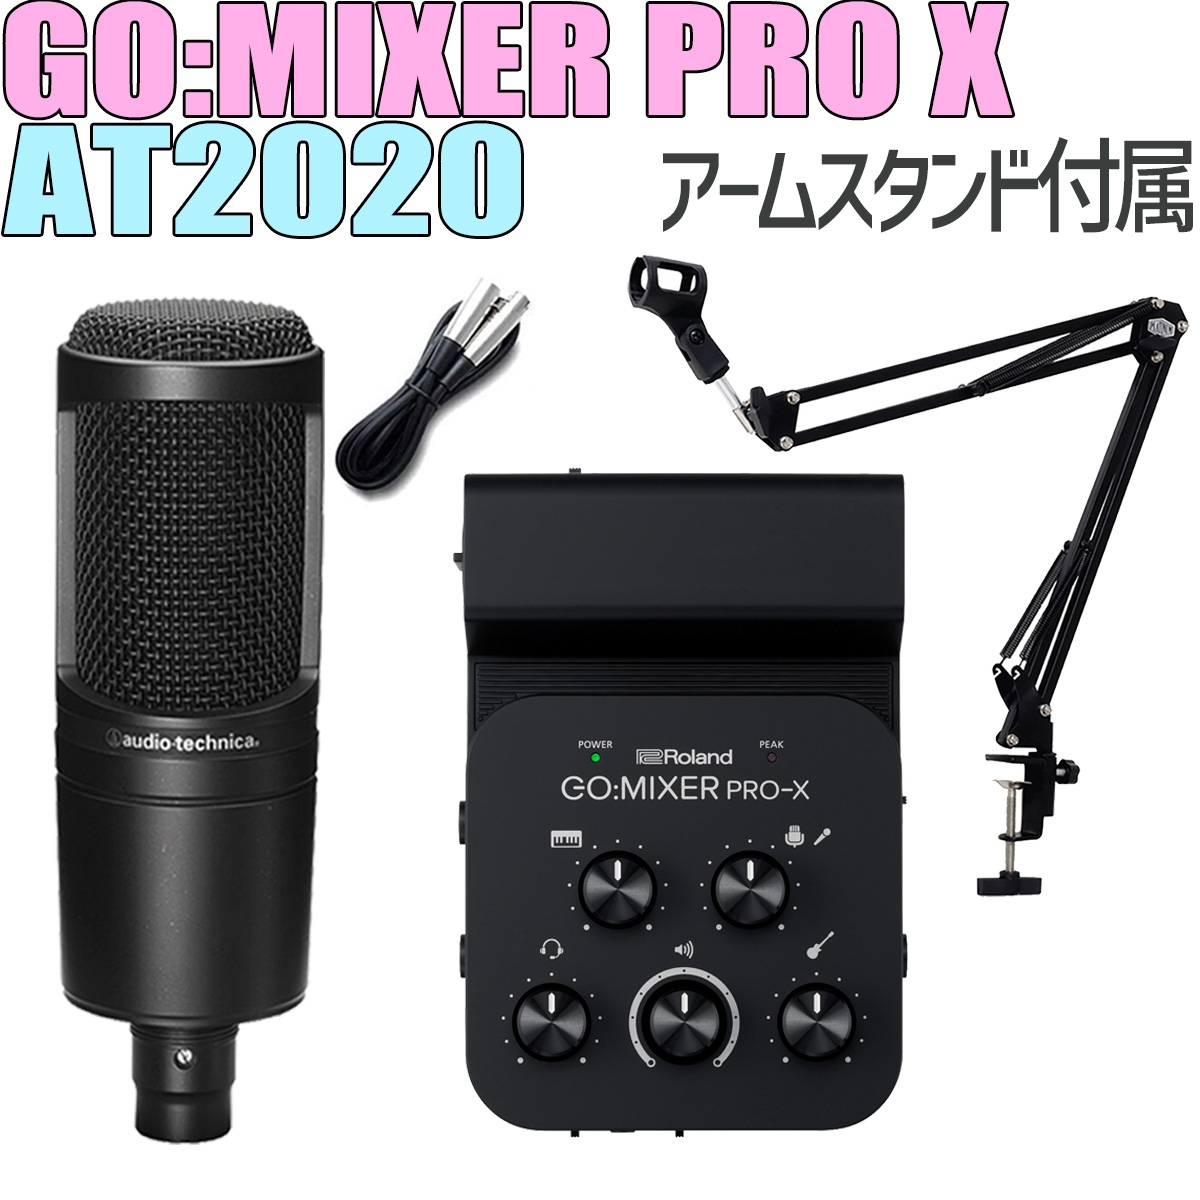 キャリングポーチプレゼント] Roland GO:MIXER PRO-X + audio-technica